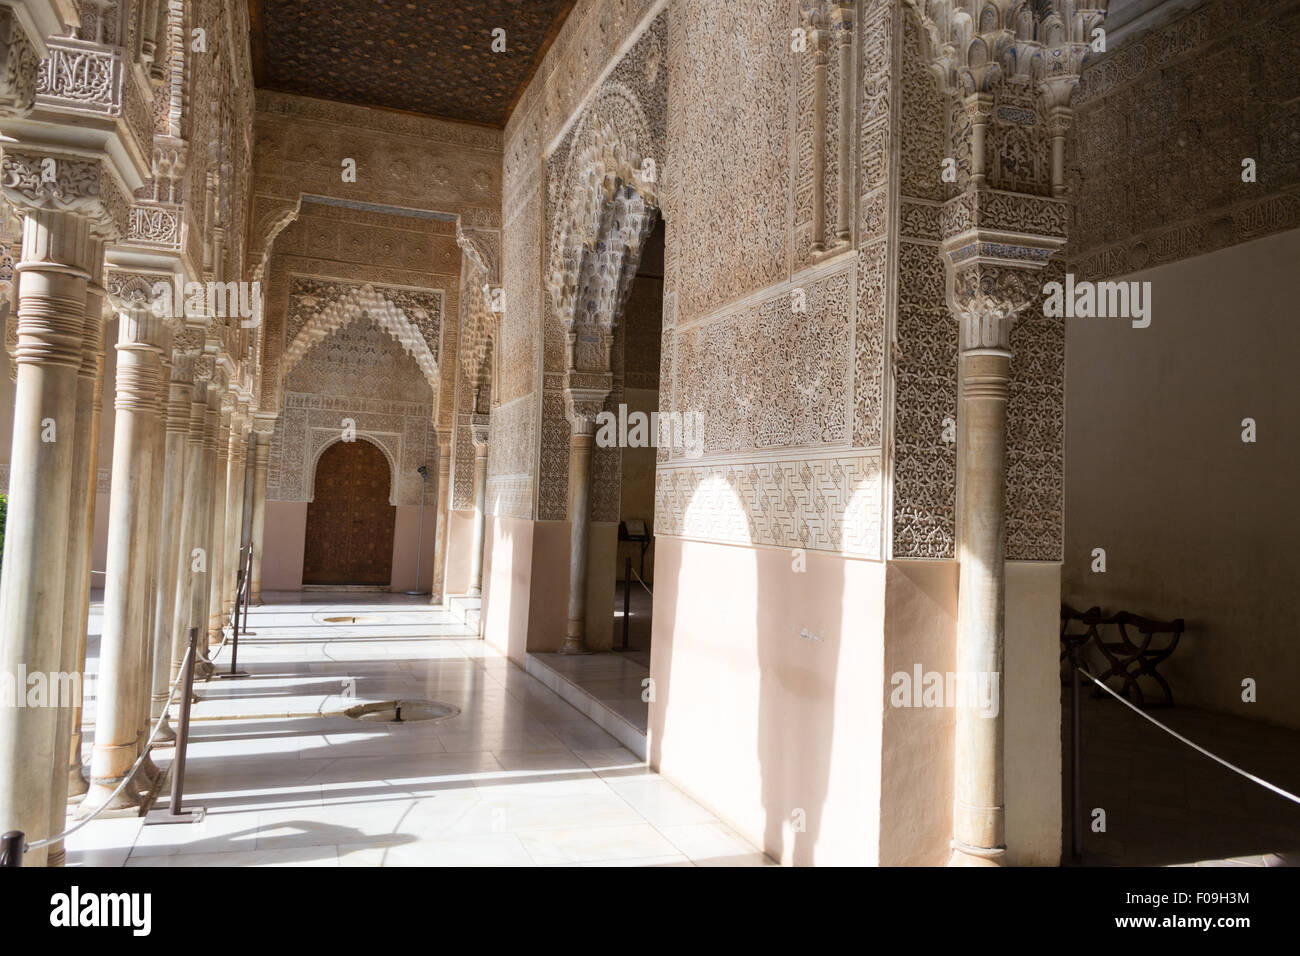 Alhambra Palace si trova a Granada (Spagna) è un master pice della islamico/architettura musulmana in Europa Foto Stock